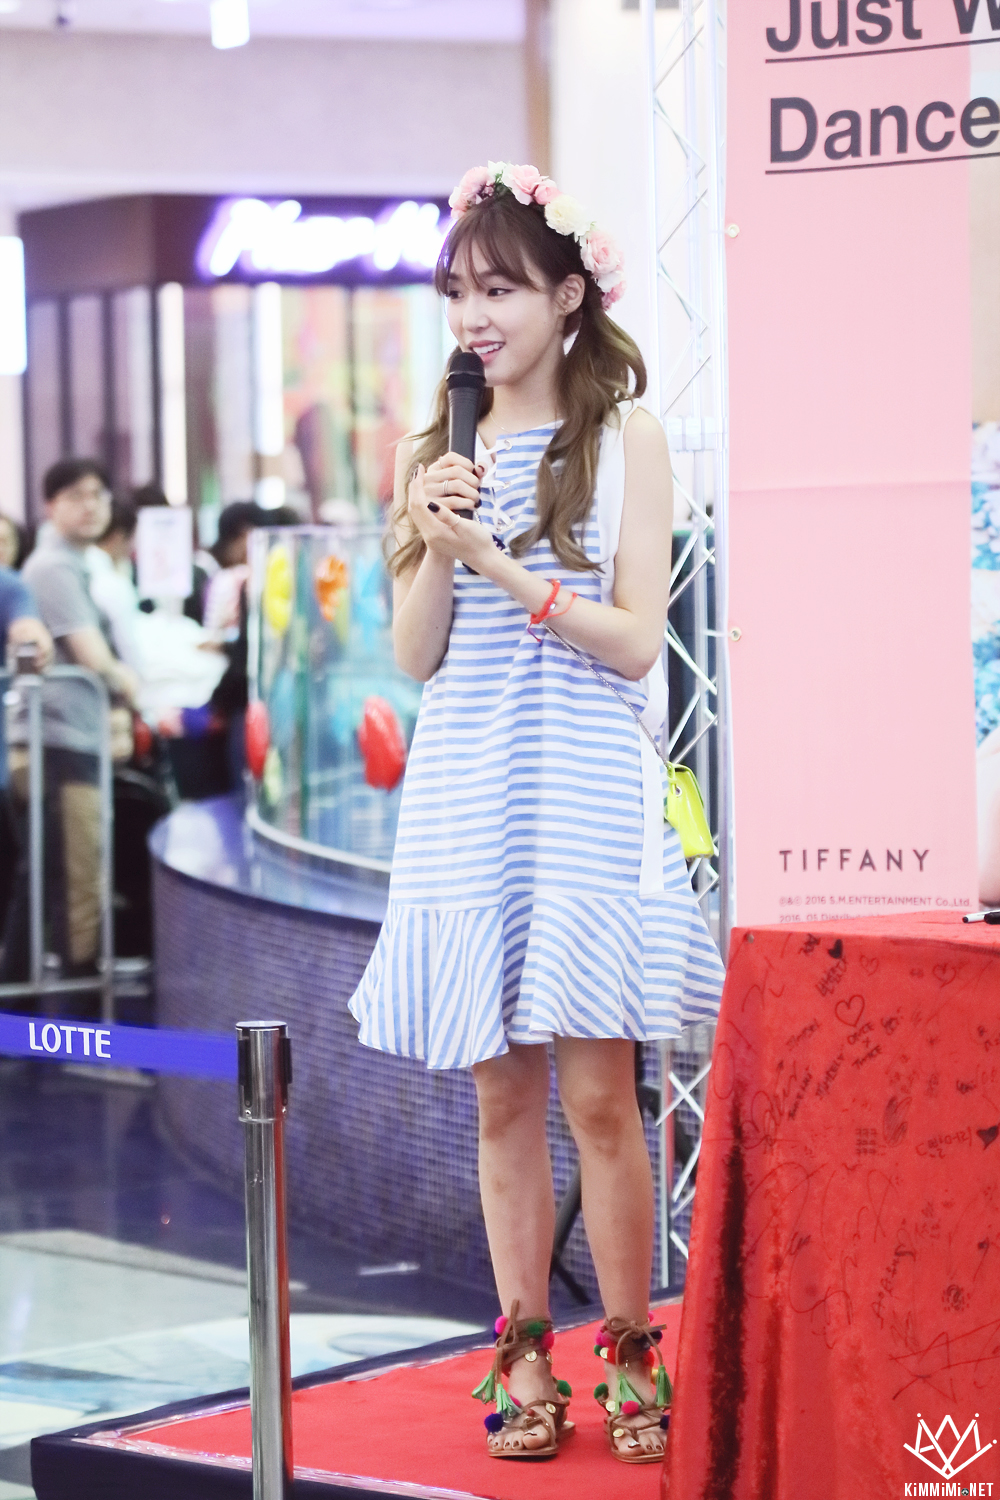 [PIC][06-06-2016]Tiffany tham dự buổi Fansign cho "I Just Wanna Dance" tại Busan vào chiều nay - Page 5 27336939575818BB282E83